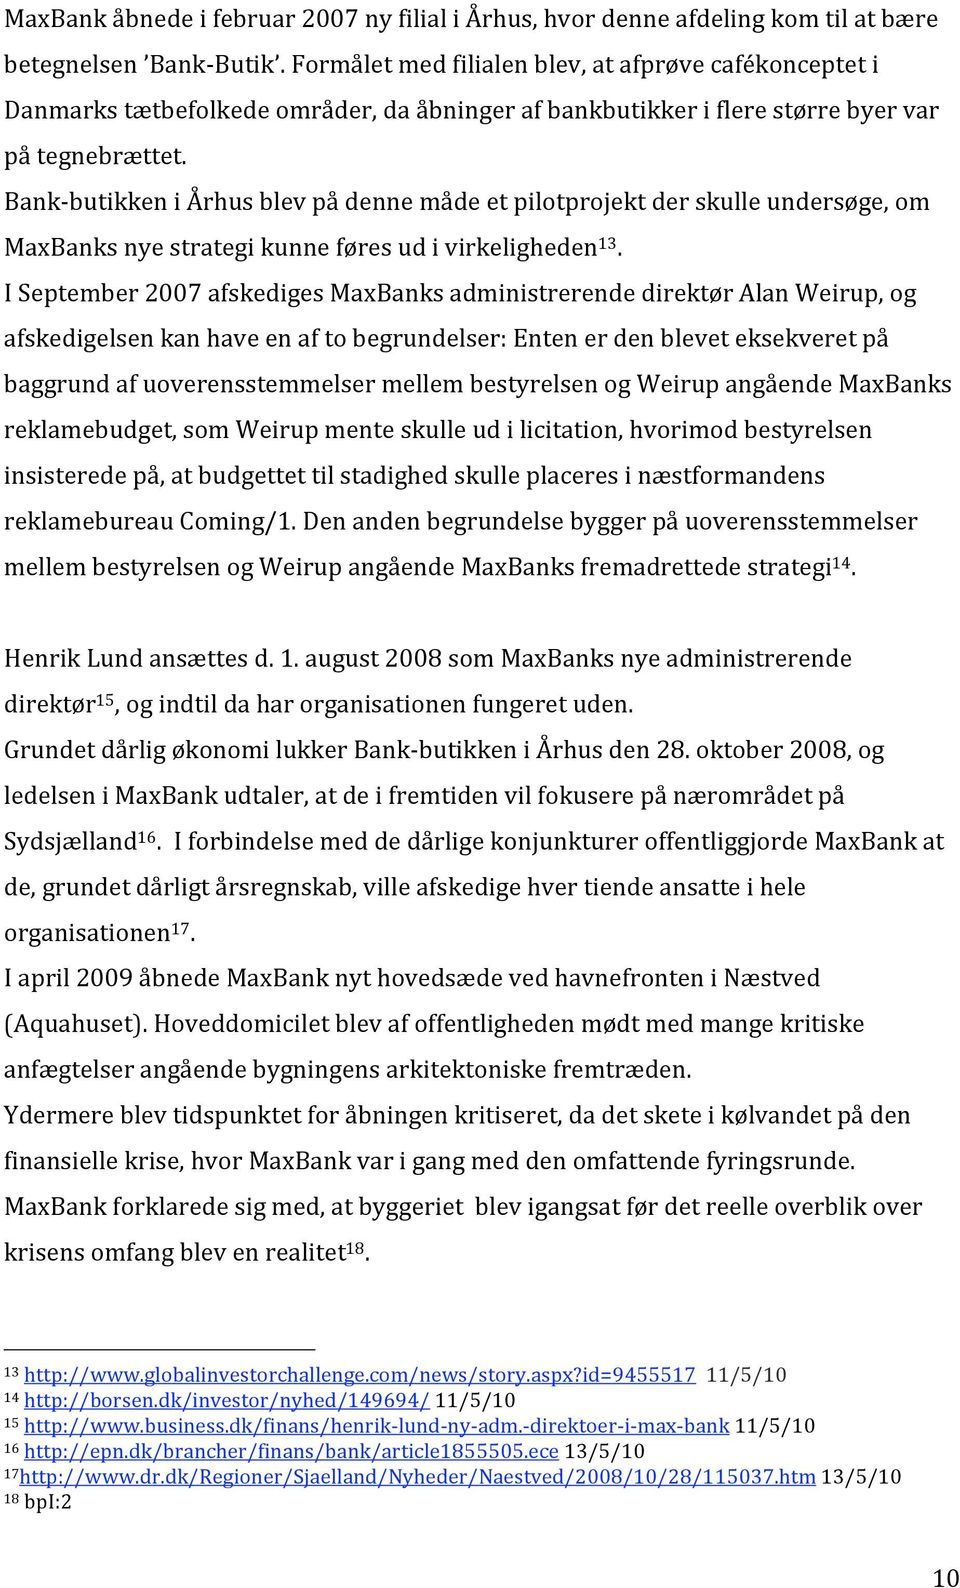 Bank butikkeniårhusblevpådennemådeetpilotprojektderskulleundersøge,om MaxBanksnyestrategikunneføresudivirkeligheden 13.